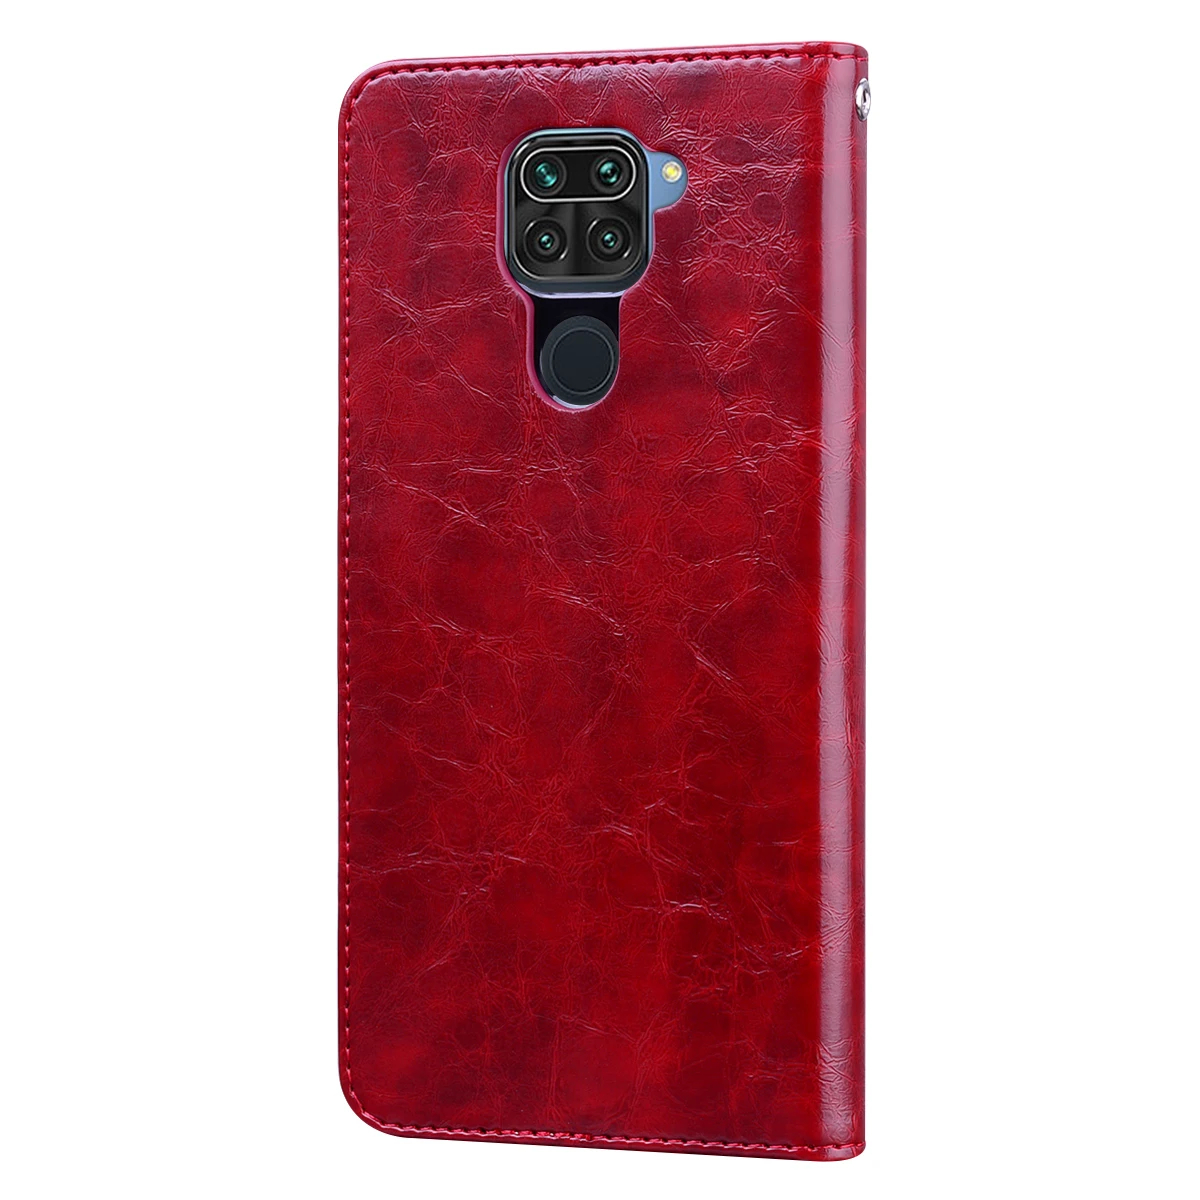 leather case for xiaomi Mềm mại Ốp Lưng Bao Da Ví Da Cho Xiaomi Redmi 9A 9C 6A 7A 8A 9 8 Redmi Note 9S 8T 6 7 8 9 Pro Flip Cover Thẻ Vỏ xiaomi leather case glass